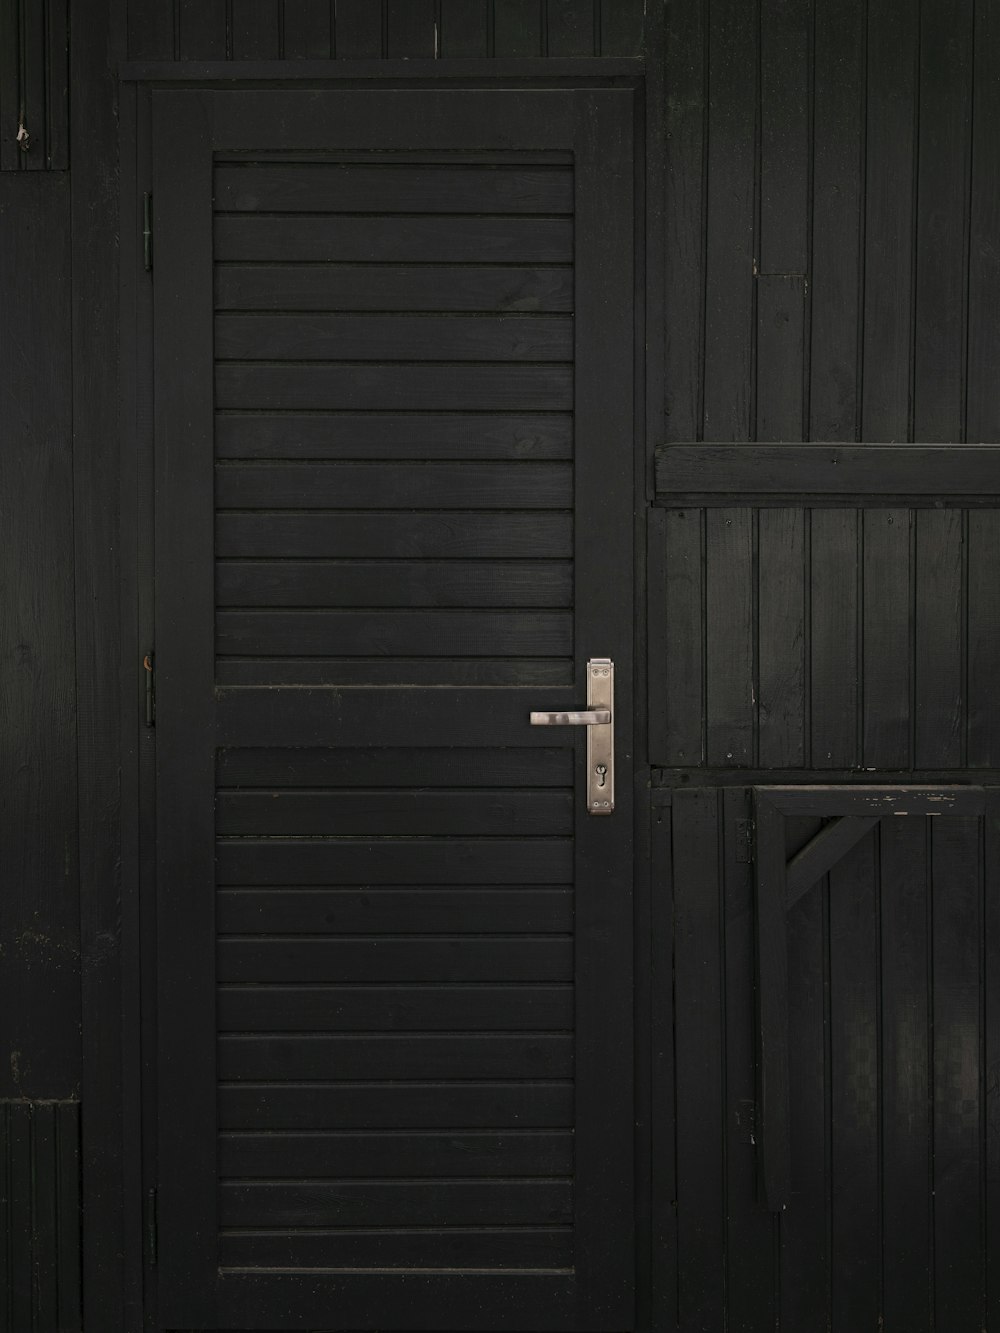 a black wooden door with a metal handle